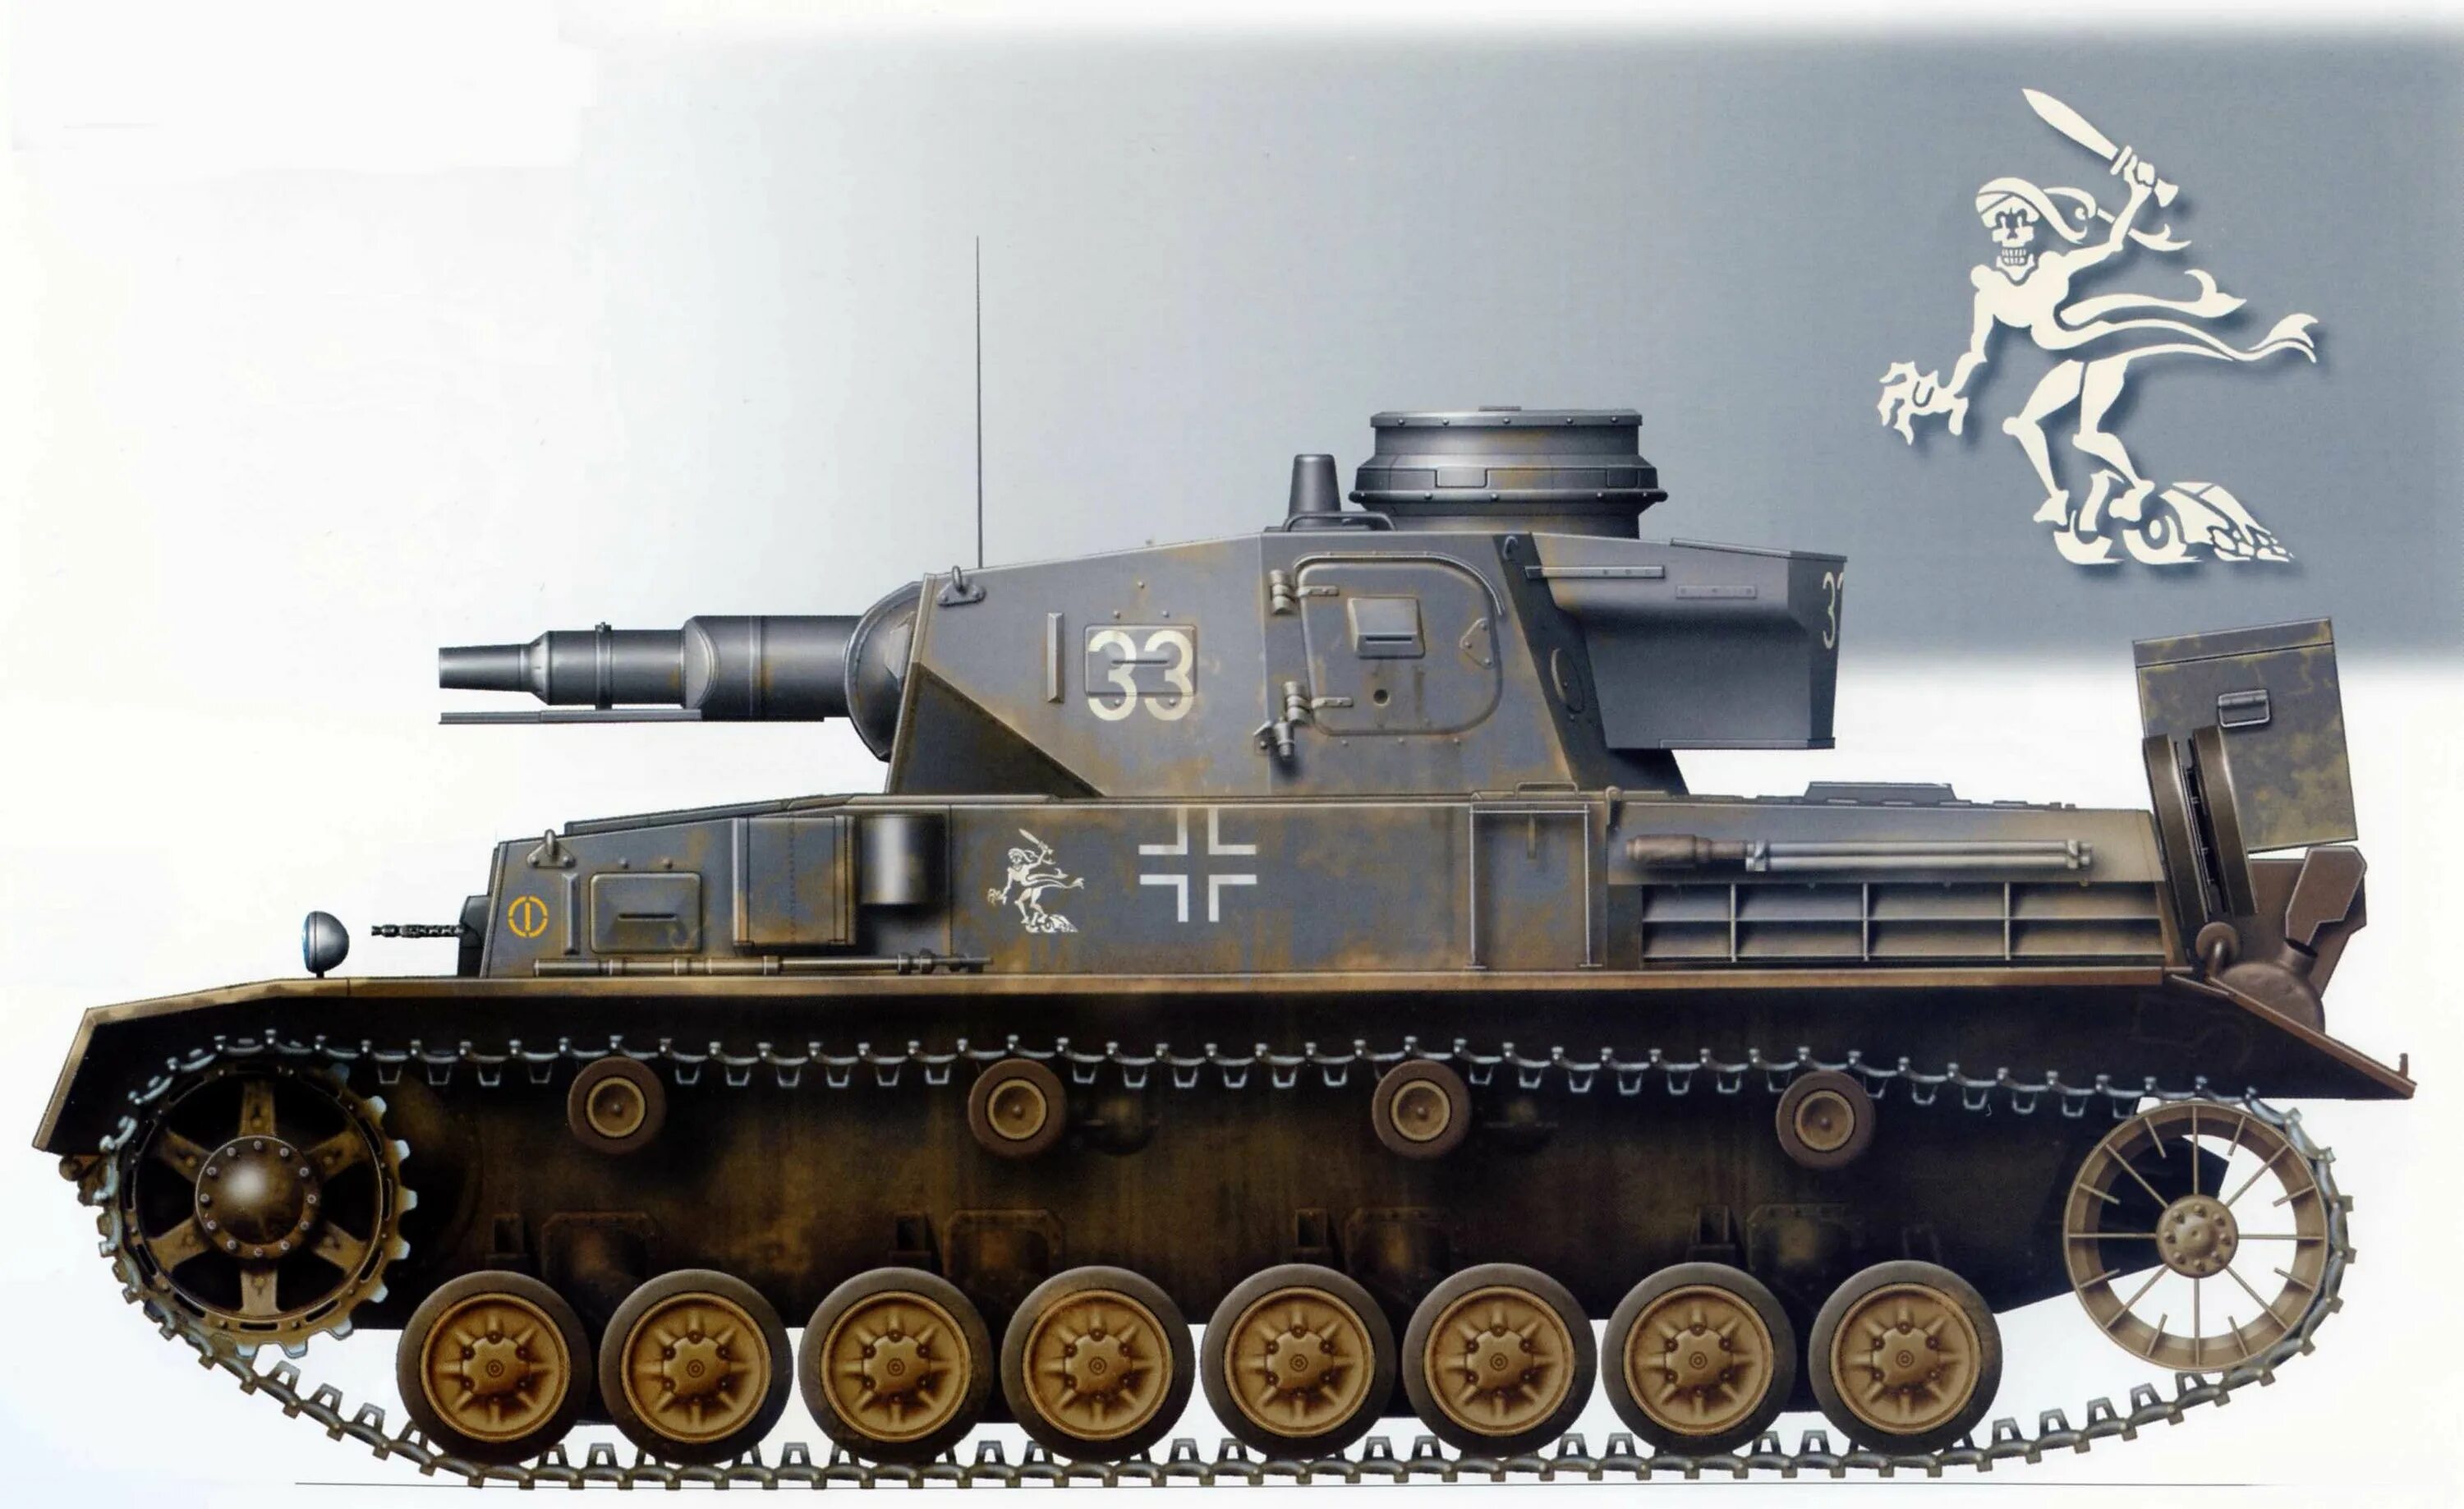 Panzer iv. Панцер 4м. Панзер 4 76мм. PZ IV а1. Панцер 4 Джей.